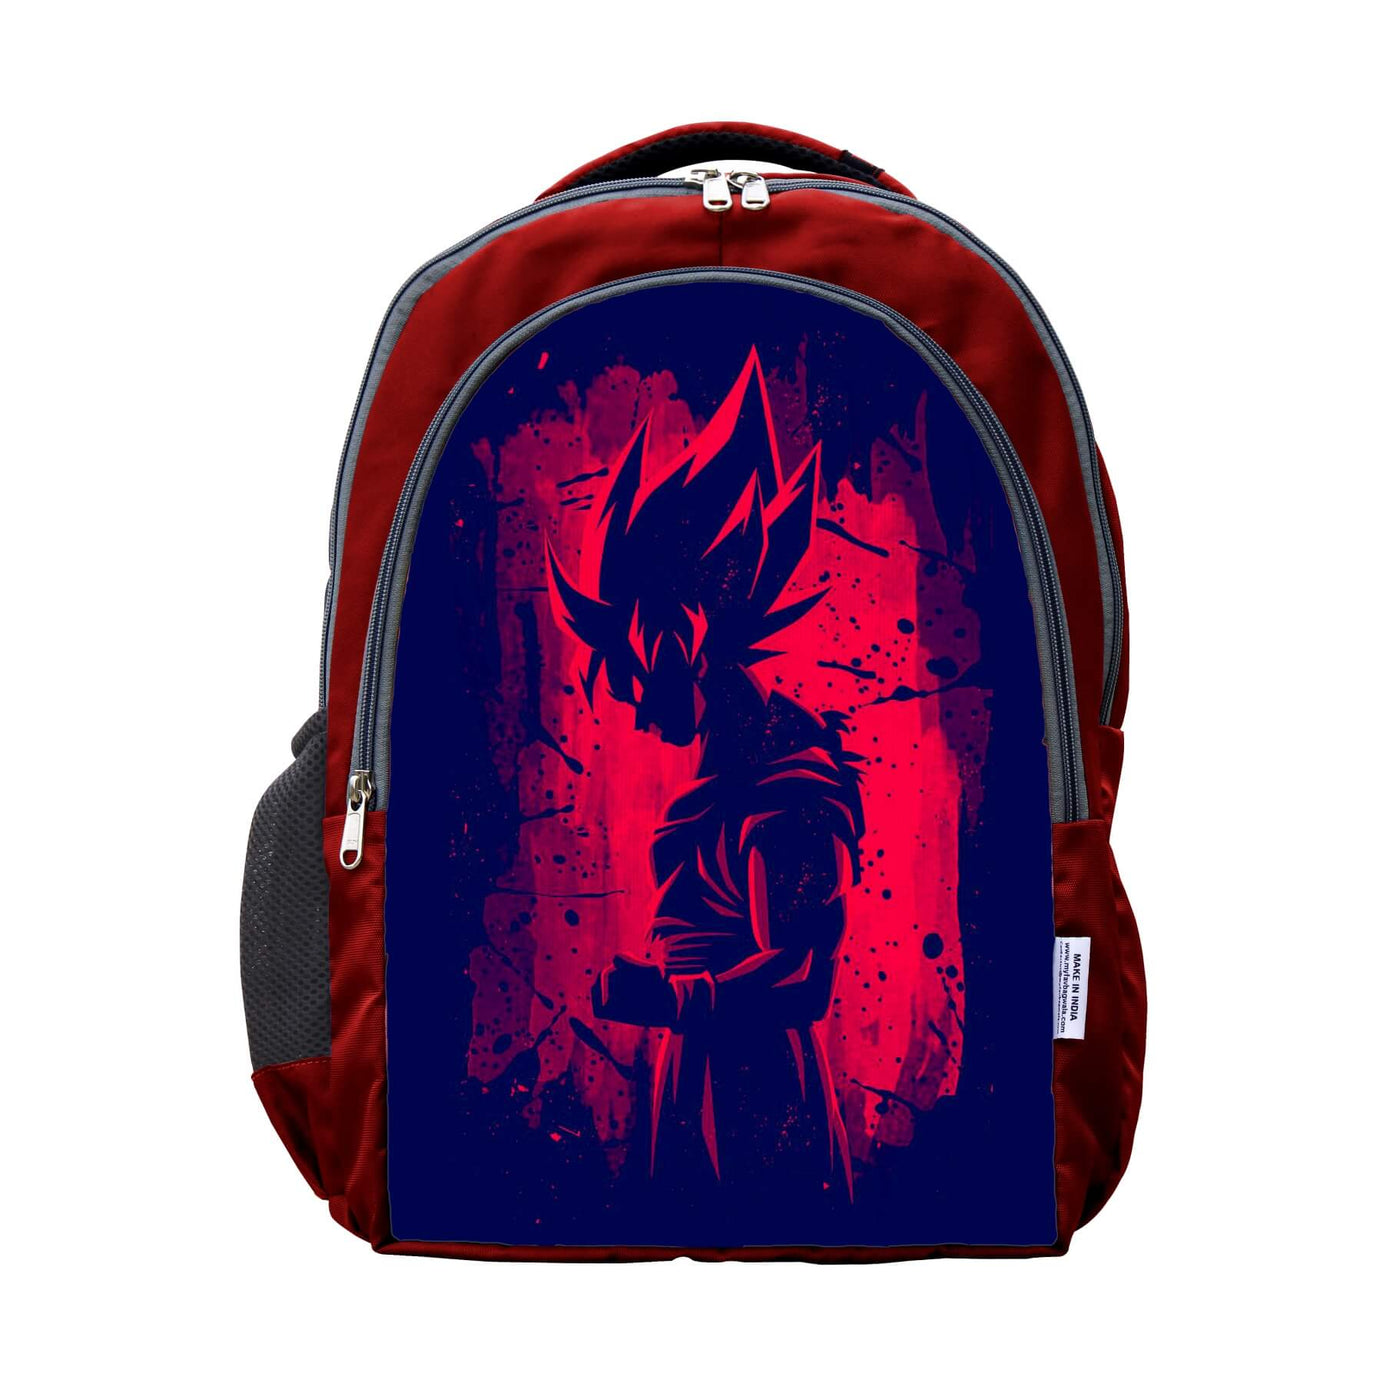 My Fav Superhero Print Laptop Backpack College / School Bag for Boys & Girls